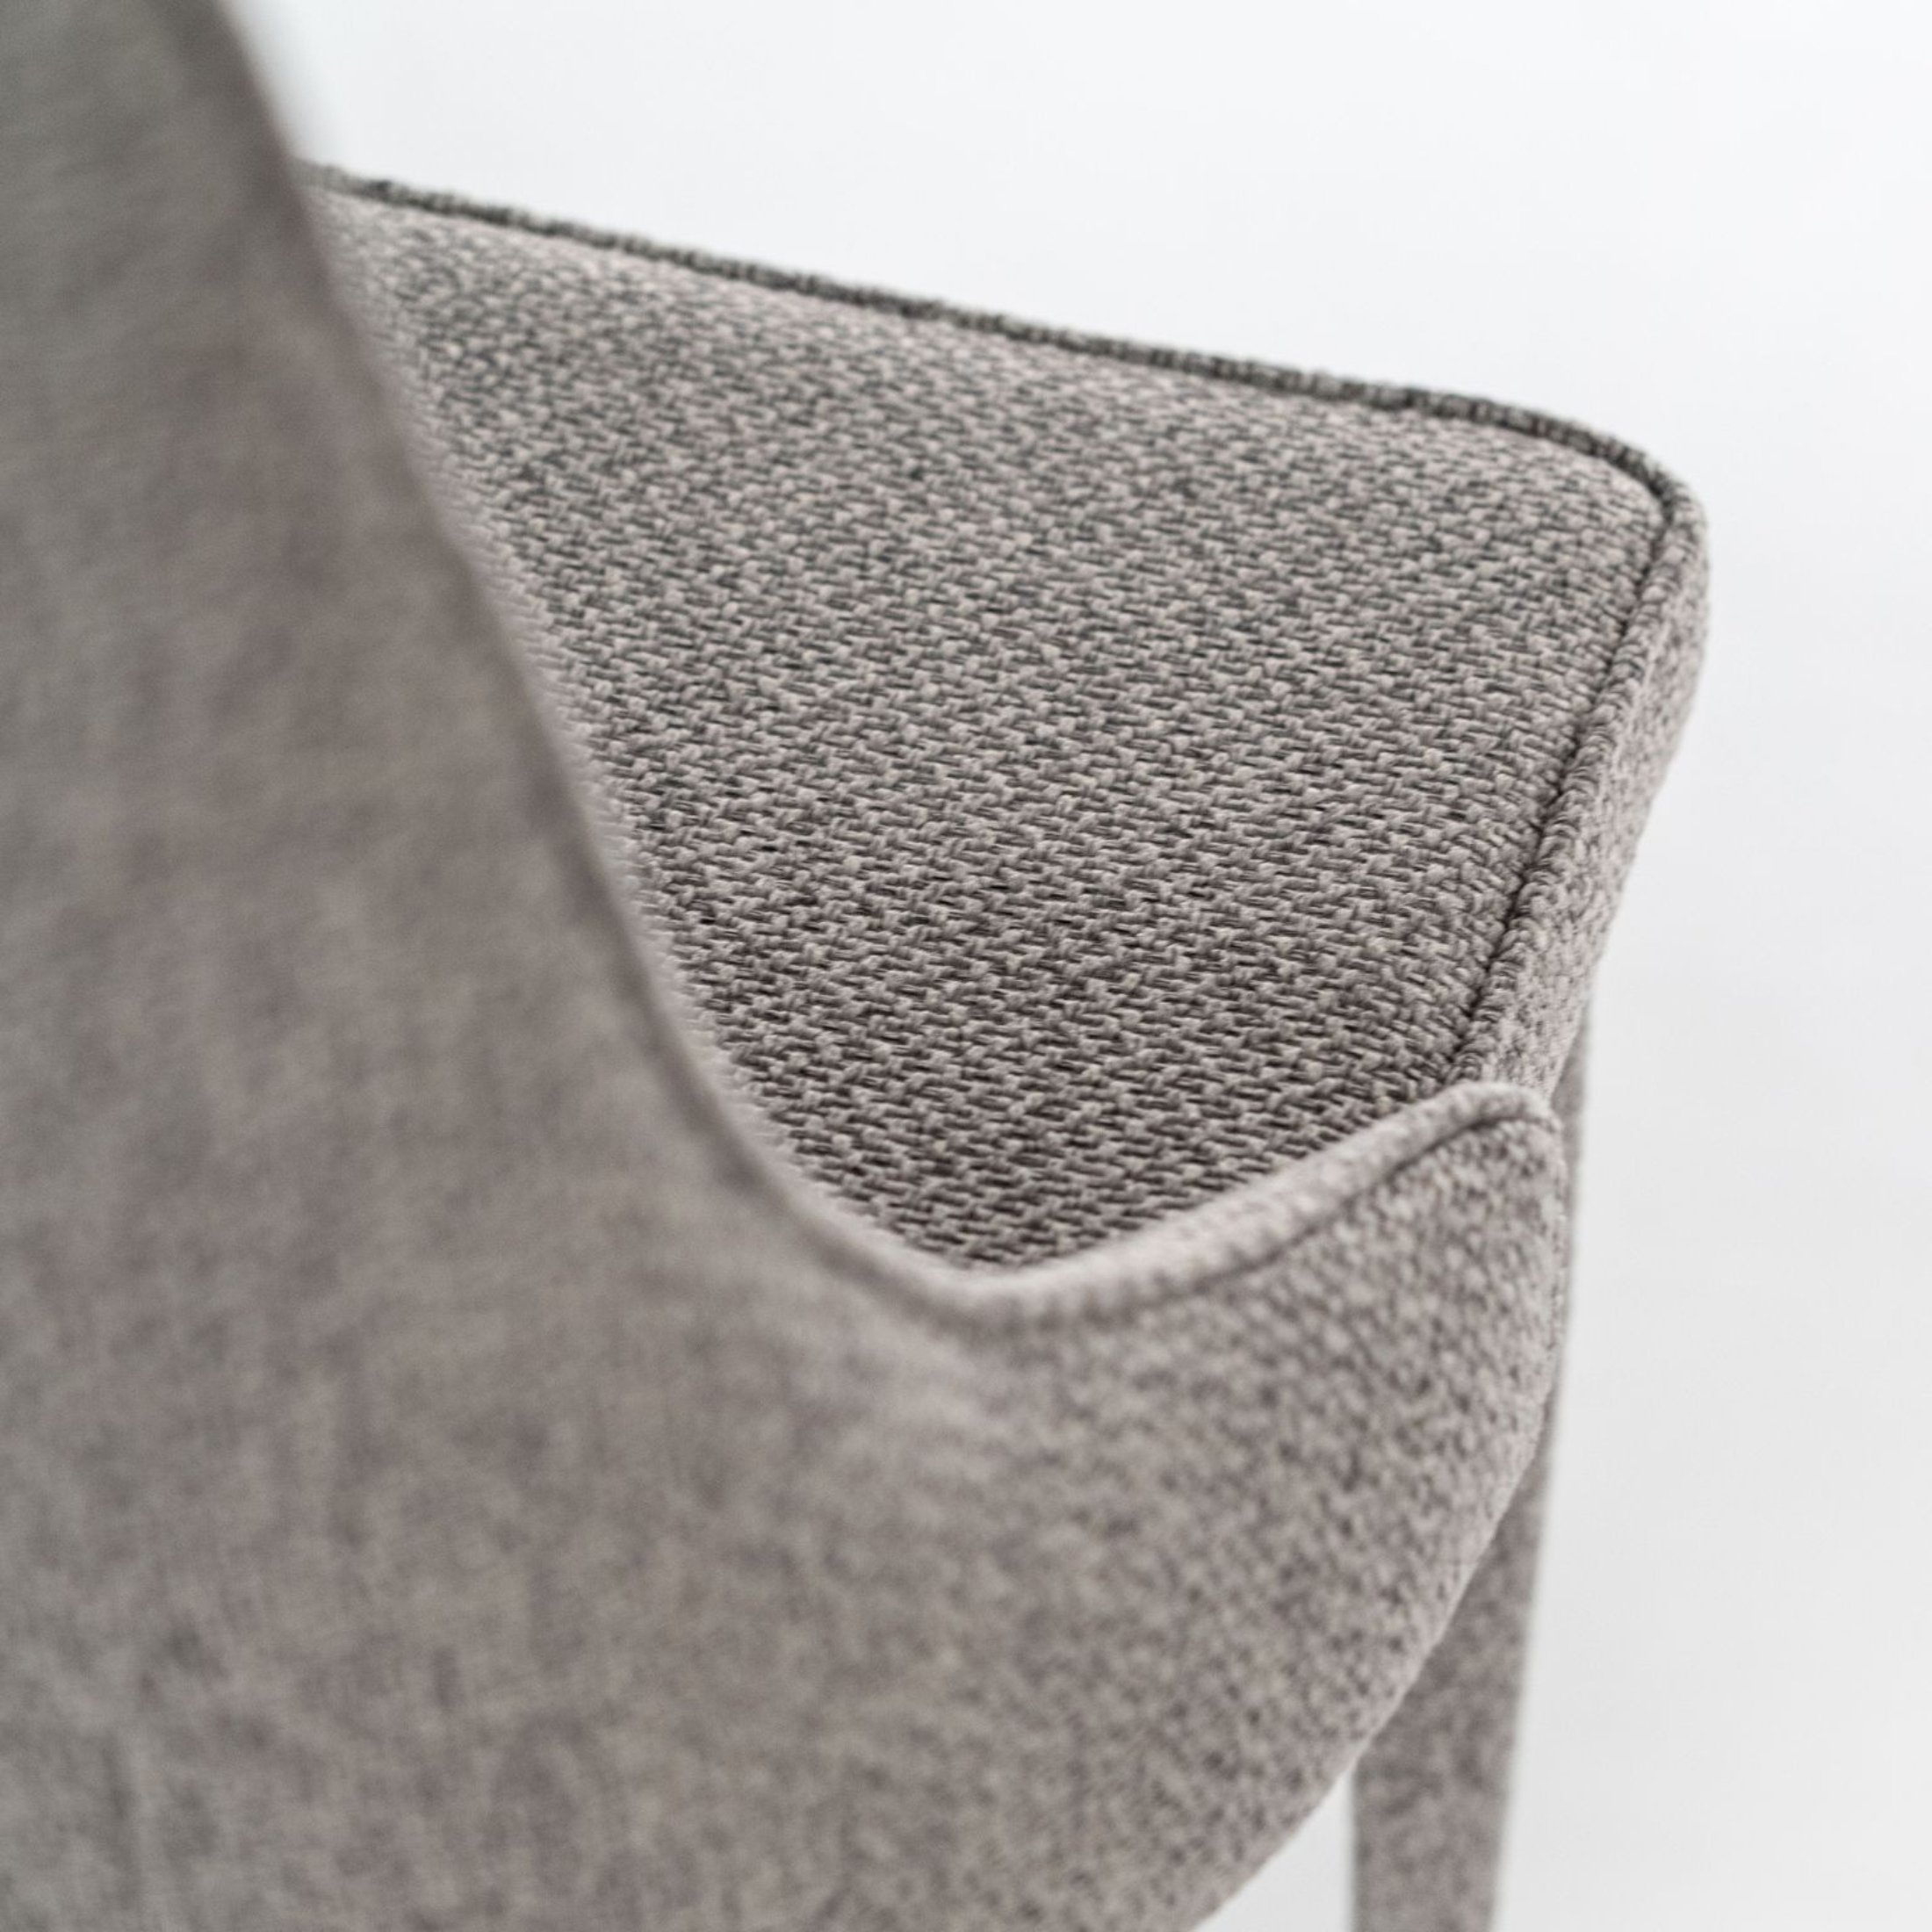 Silla acolchada "Myriam" sillón moderno de tela 46x46 91h cm